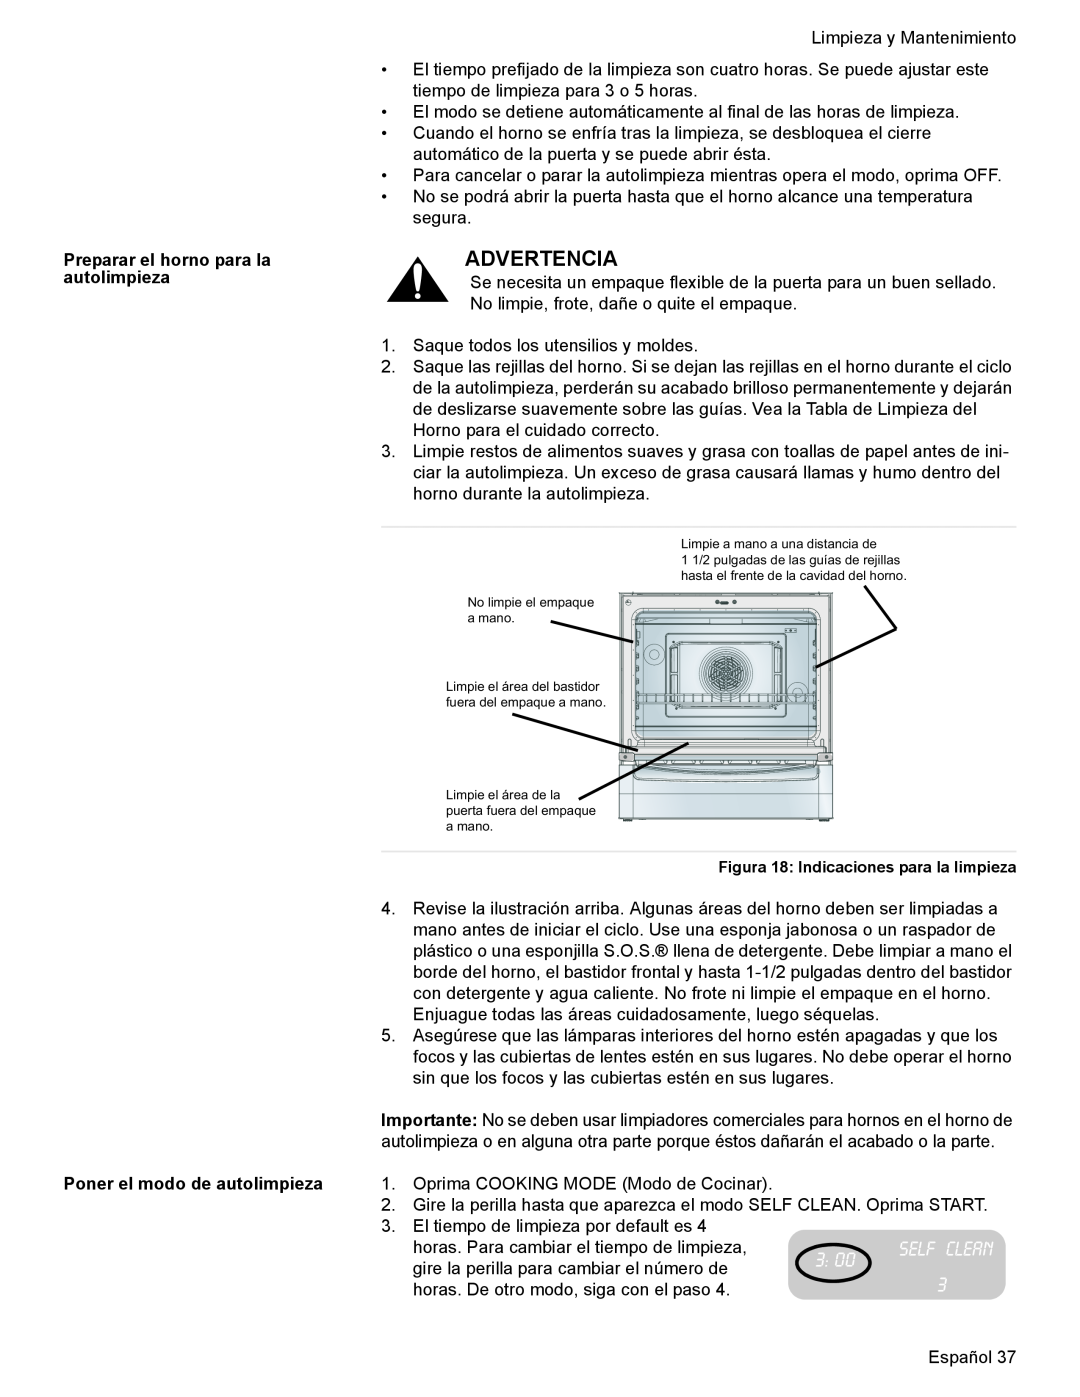 Bosch Appliances HES7052U manual Advertencia, Preparar el horno para la autolimpieza Poner el modo de autolimpieza 